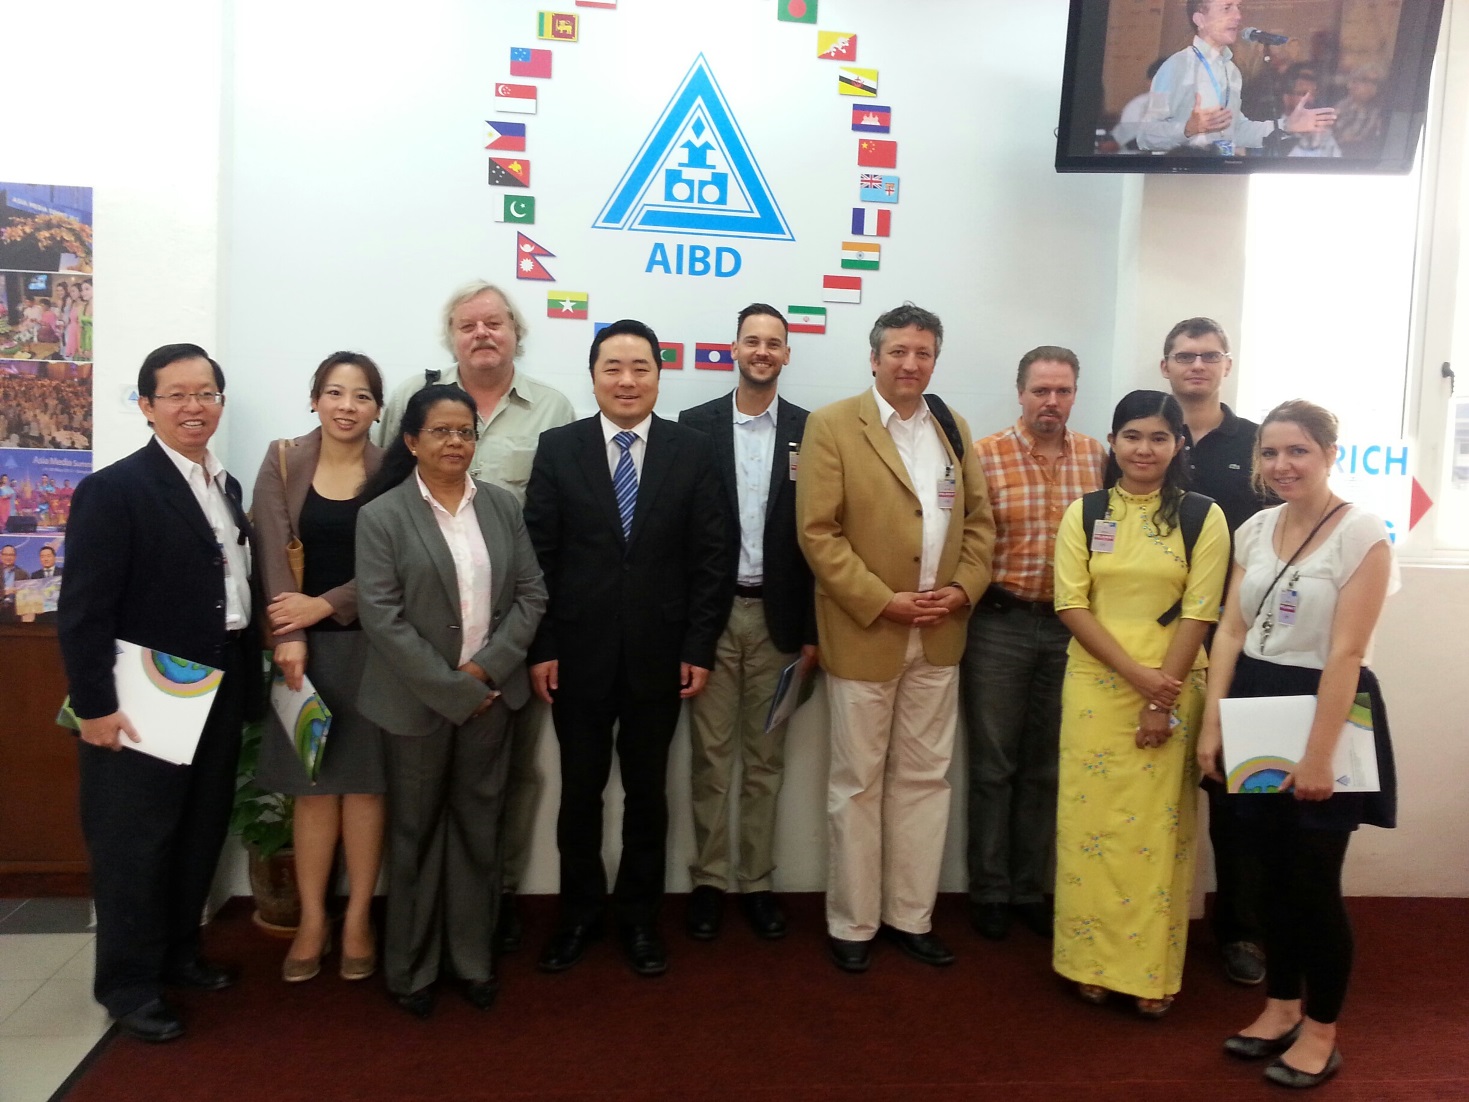 Die Workshop Teilnehmer mit Direktor Yang Binyuan (5. v. l.) und zwei seiner Mitarbeiter bei ihrem Besuch des AIBD.